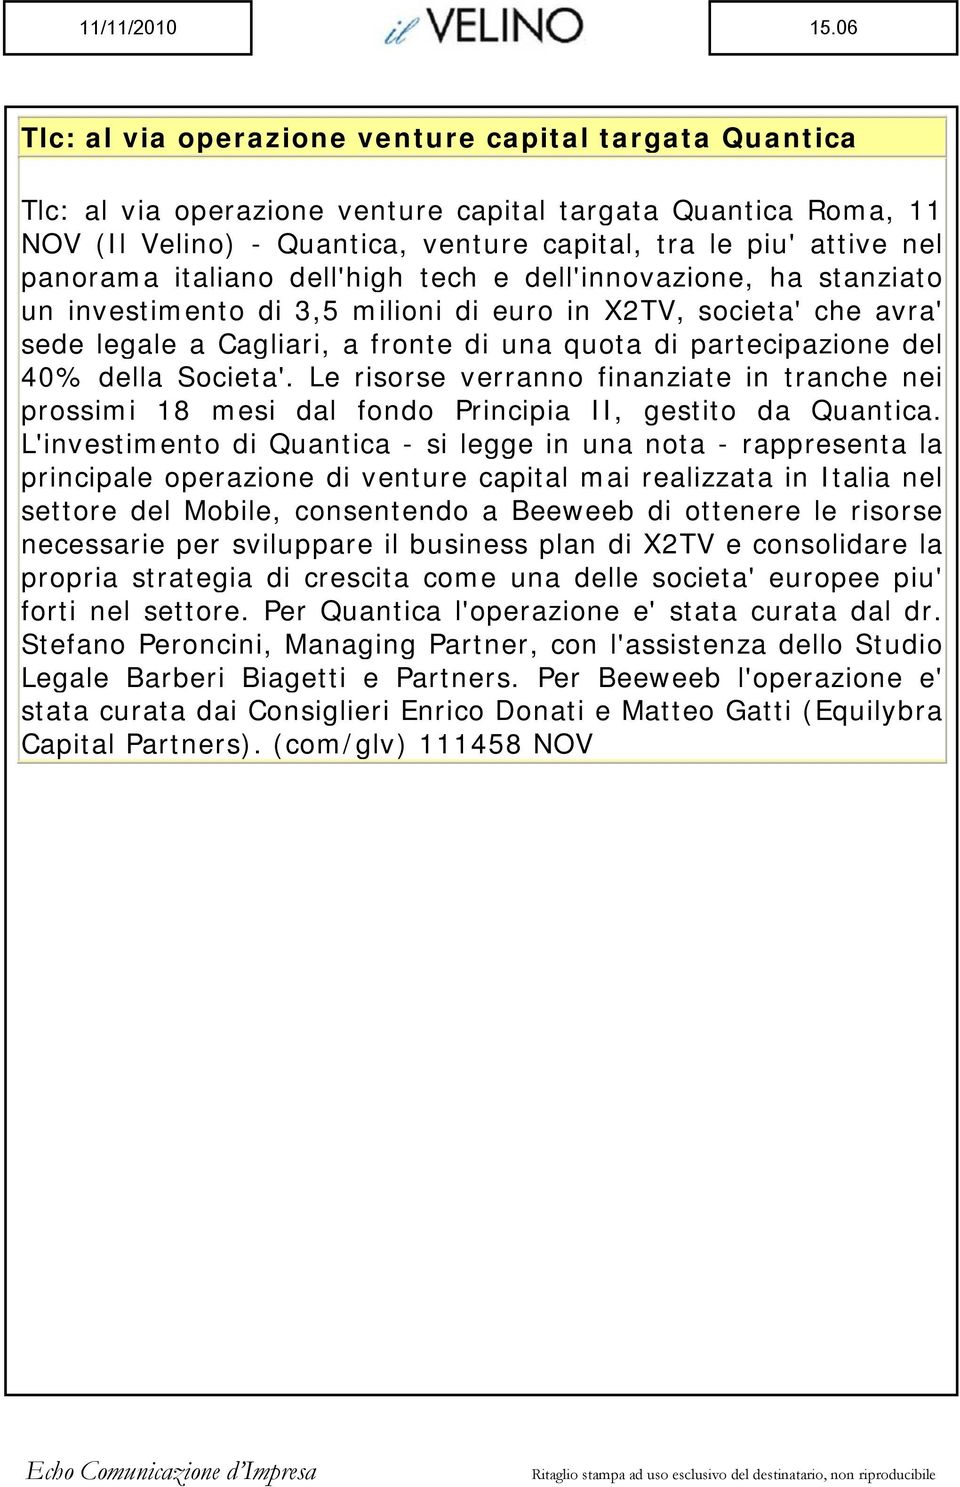 panorama italiano dell'high tech e dell'innovazione, ha stanziato un investimento di 3,5 milioni di euro in X2TV, societa' che avra' sede legale a Cagliari, a fronte di una quota di partecipazione